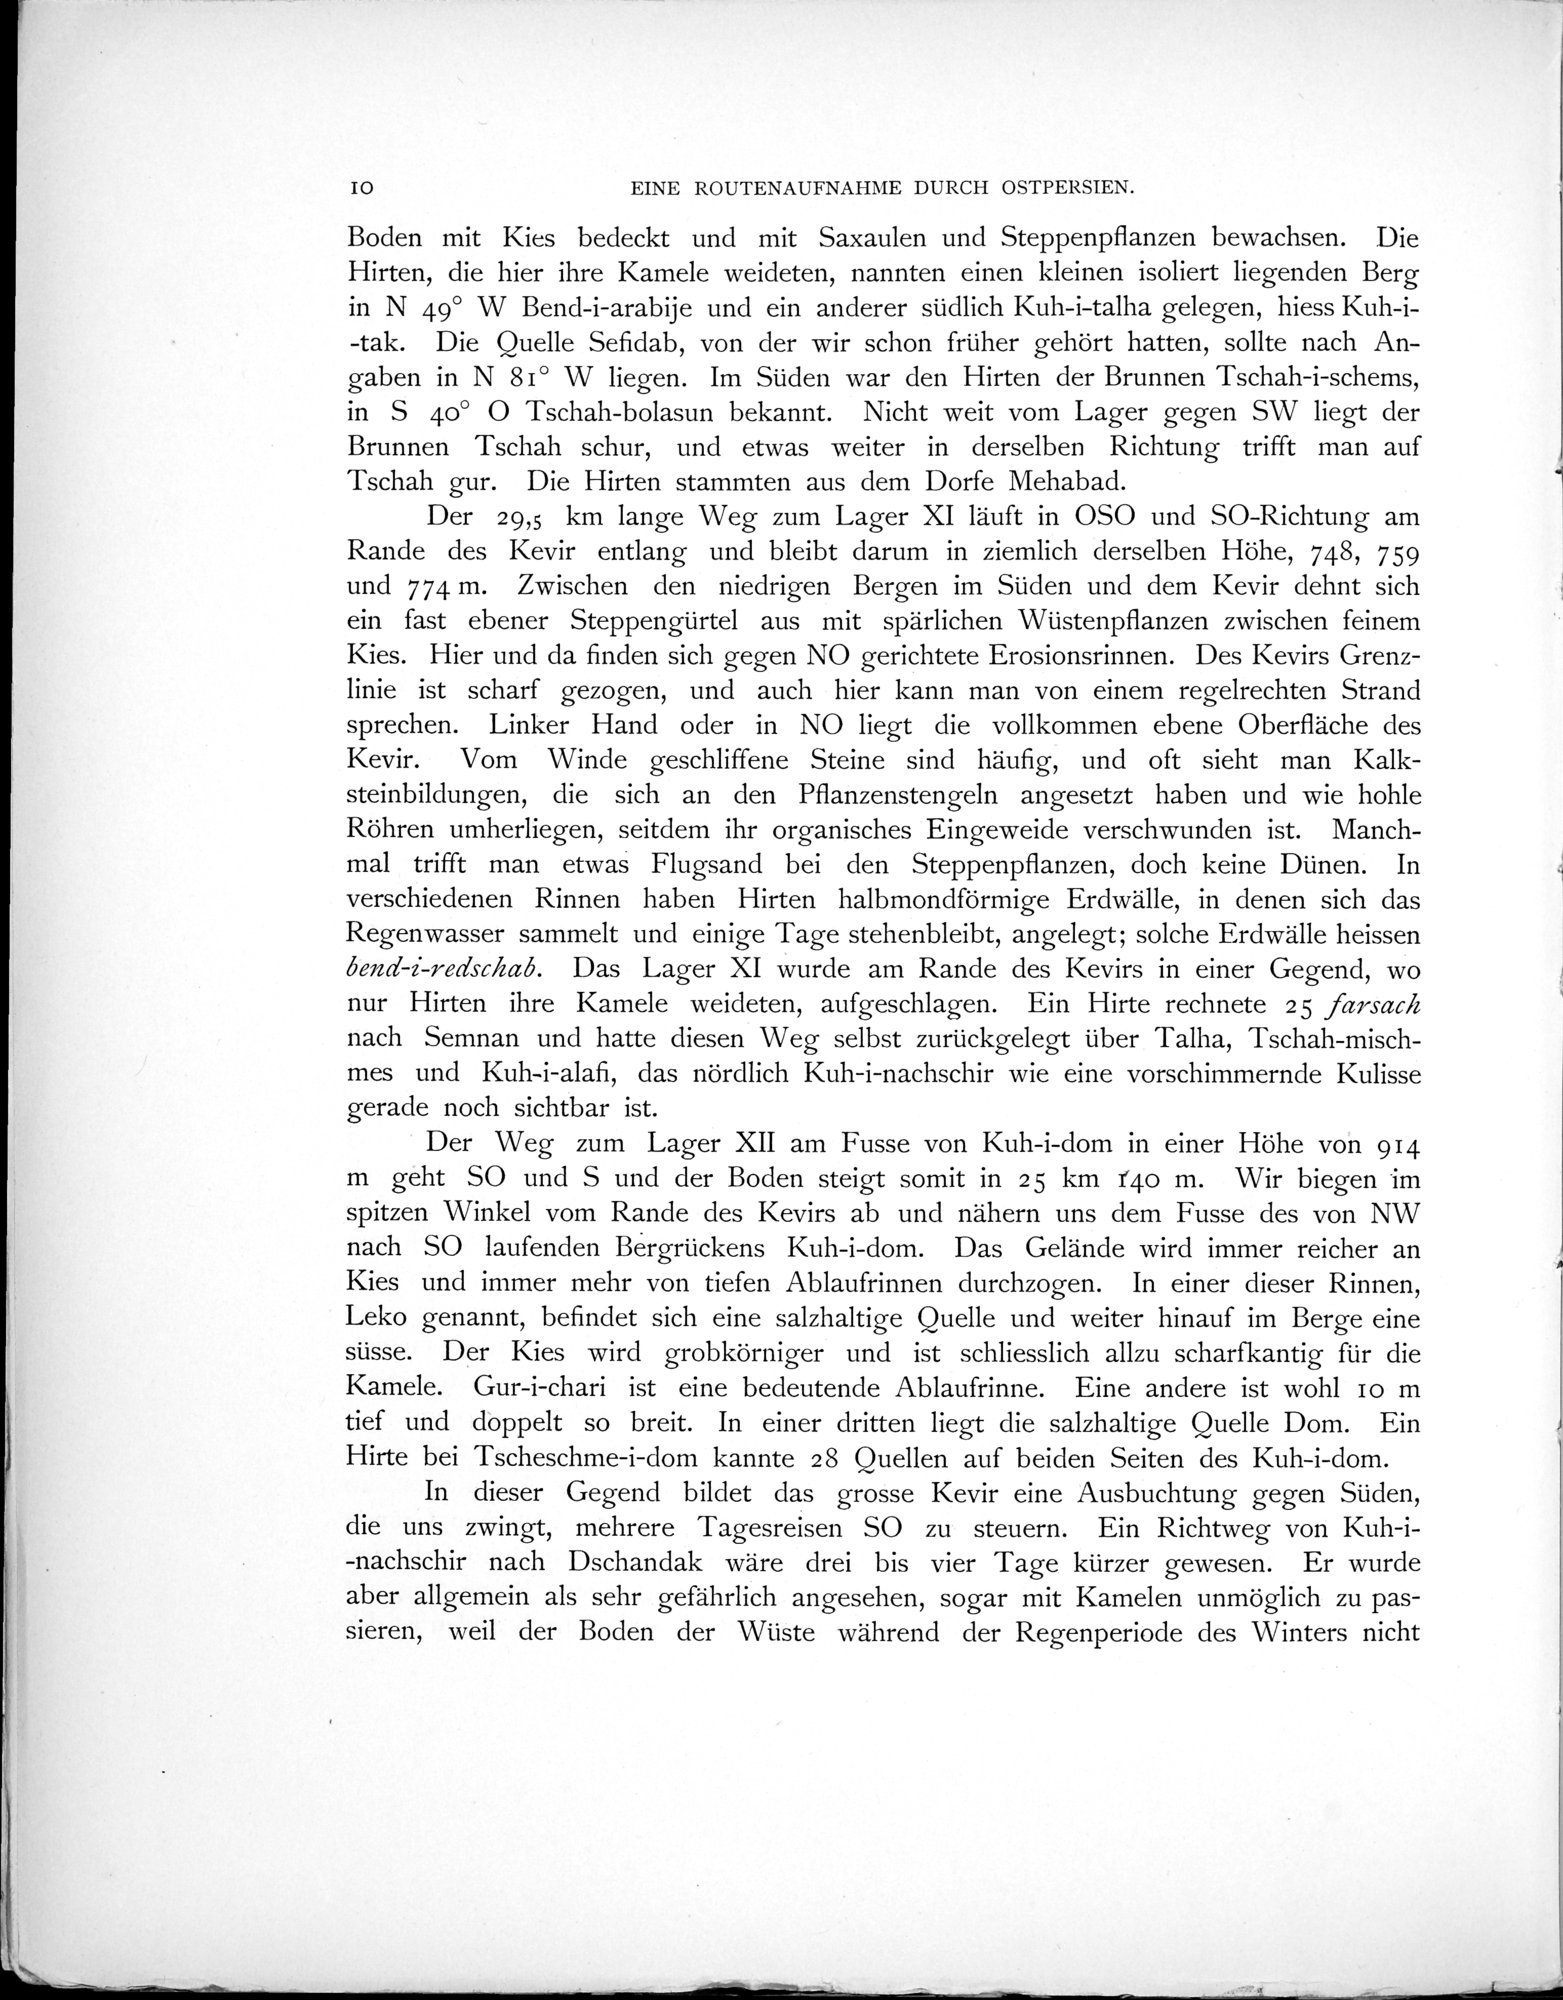 Eine Routenaufnahme durch Ostpersien : vol.1 / Page 44 (Grayscale High Resolution Image)